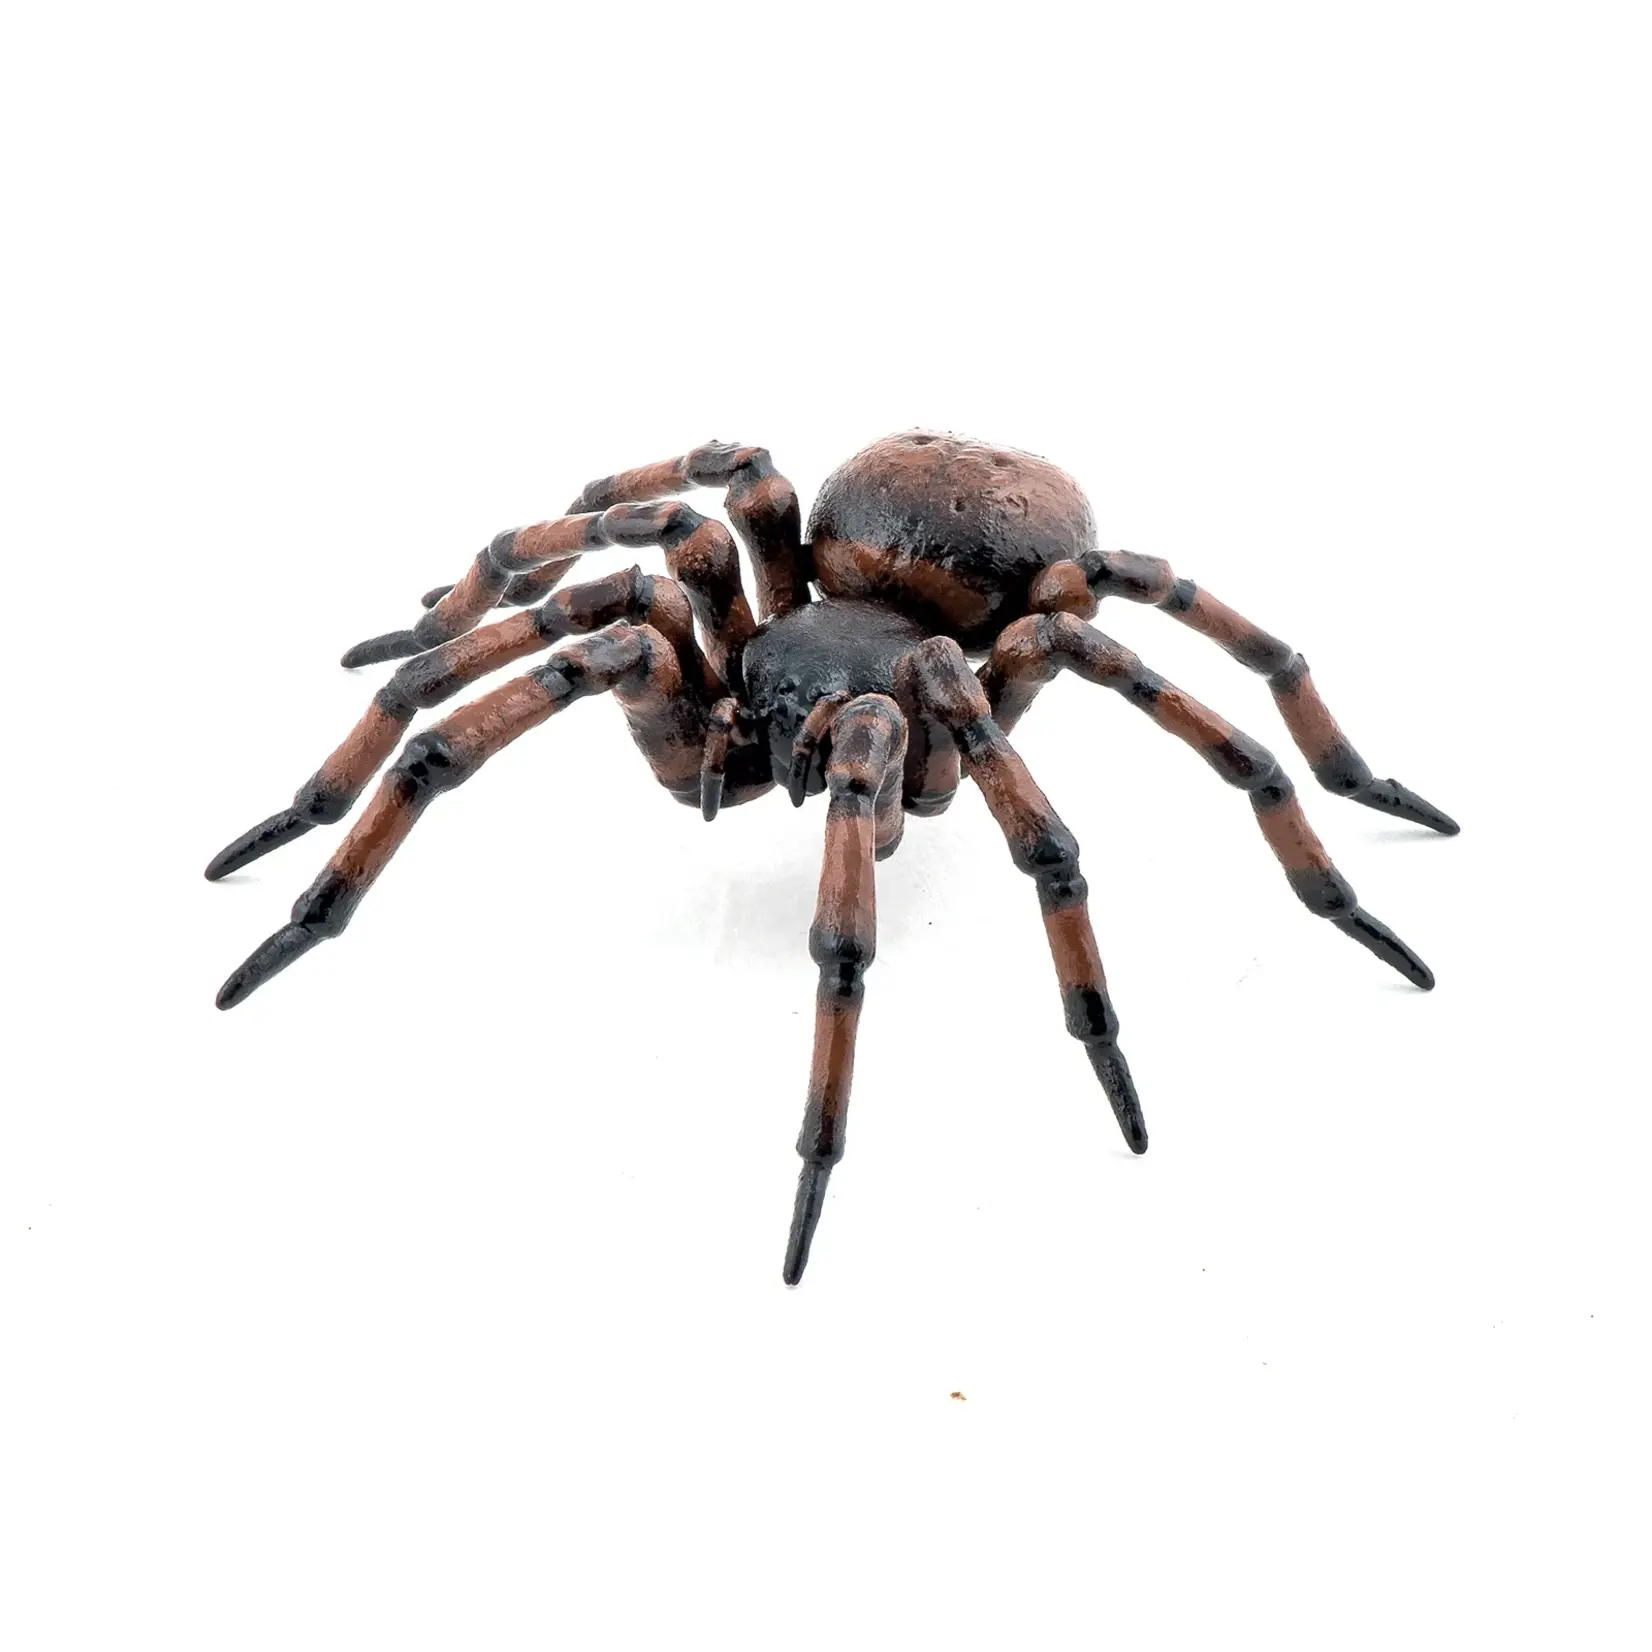 Common Spider Papo Figure